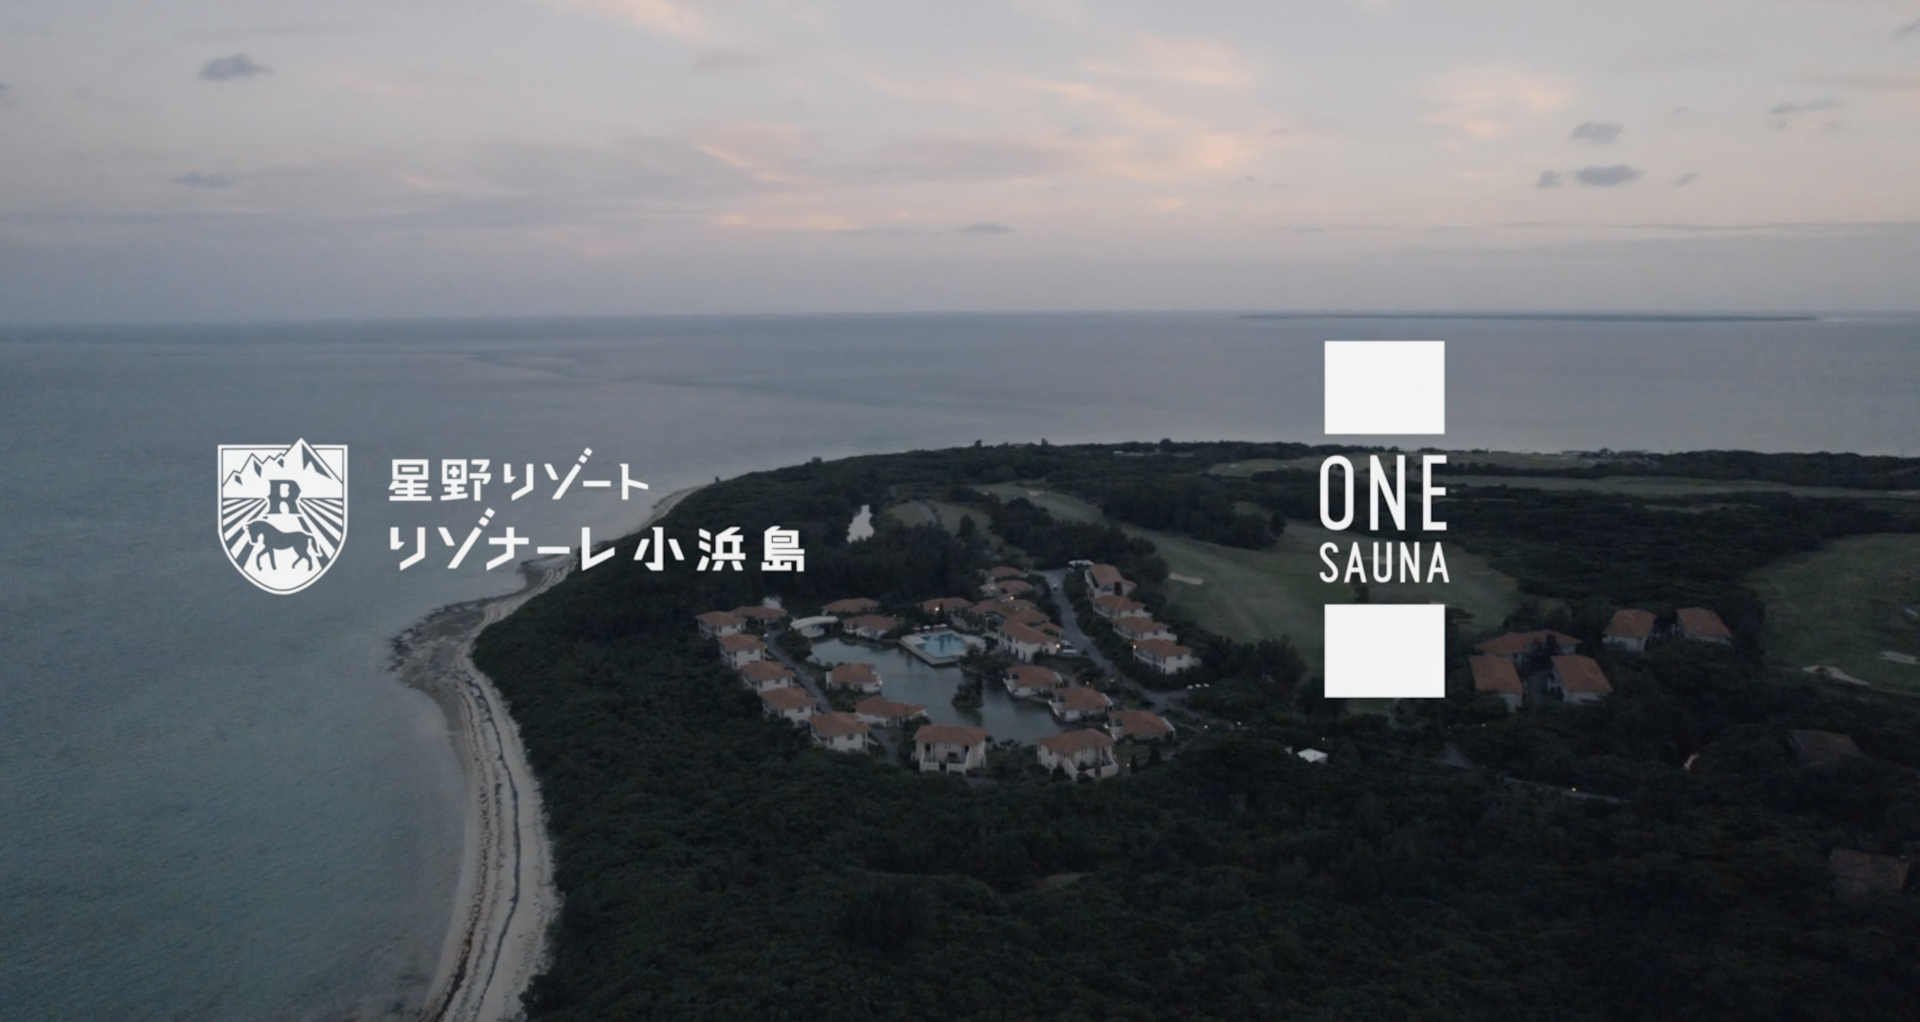 星野リゾート　リゾナーレ小浜島 × ONE SAUNA の動画がリリース